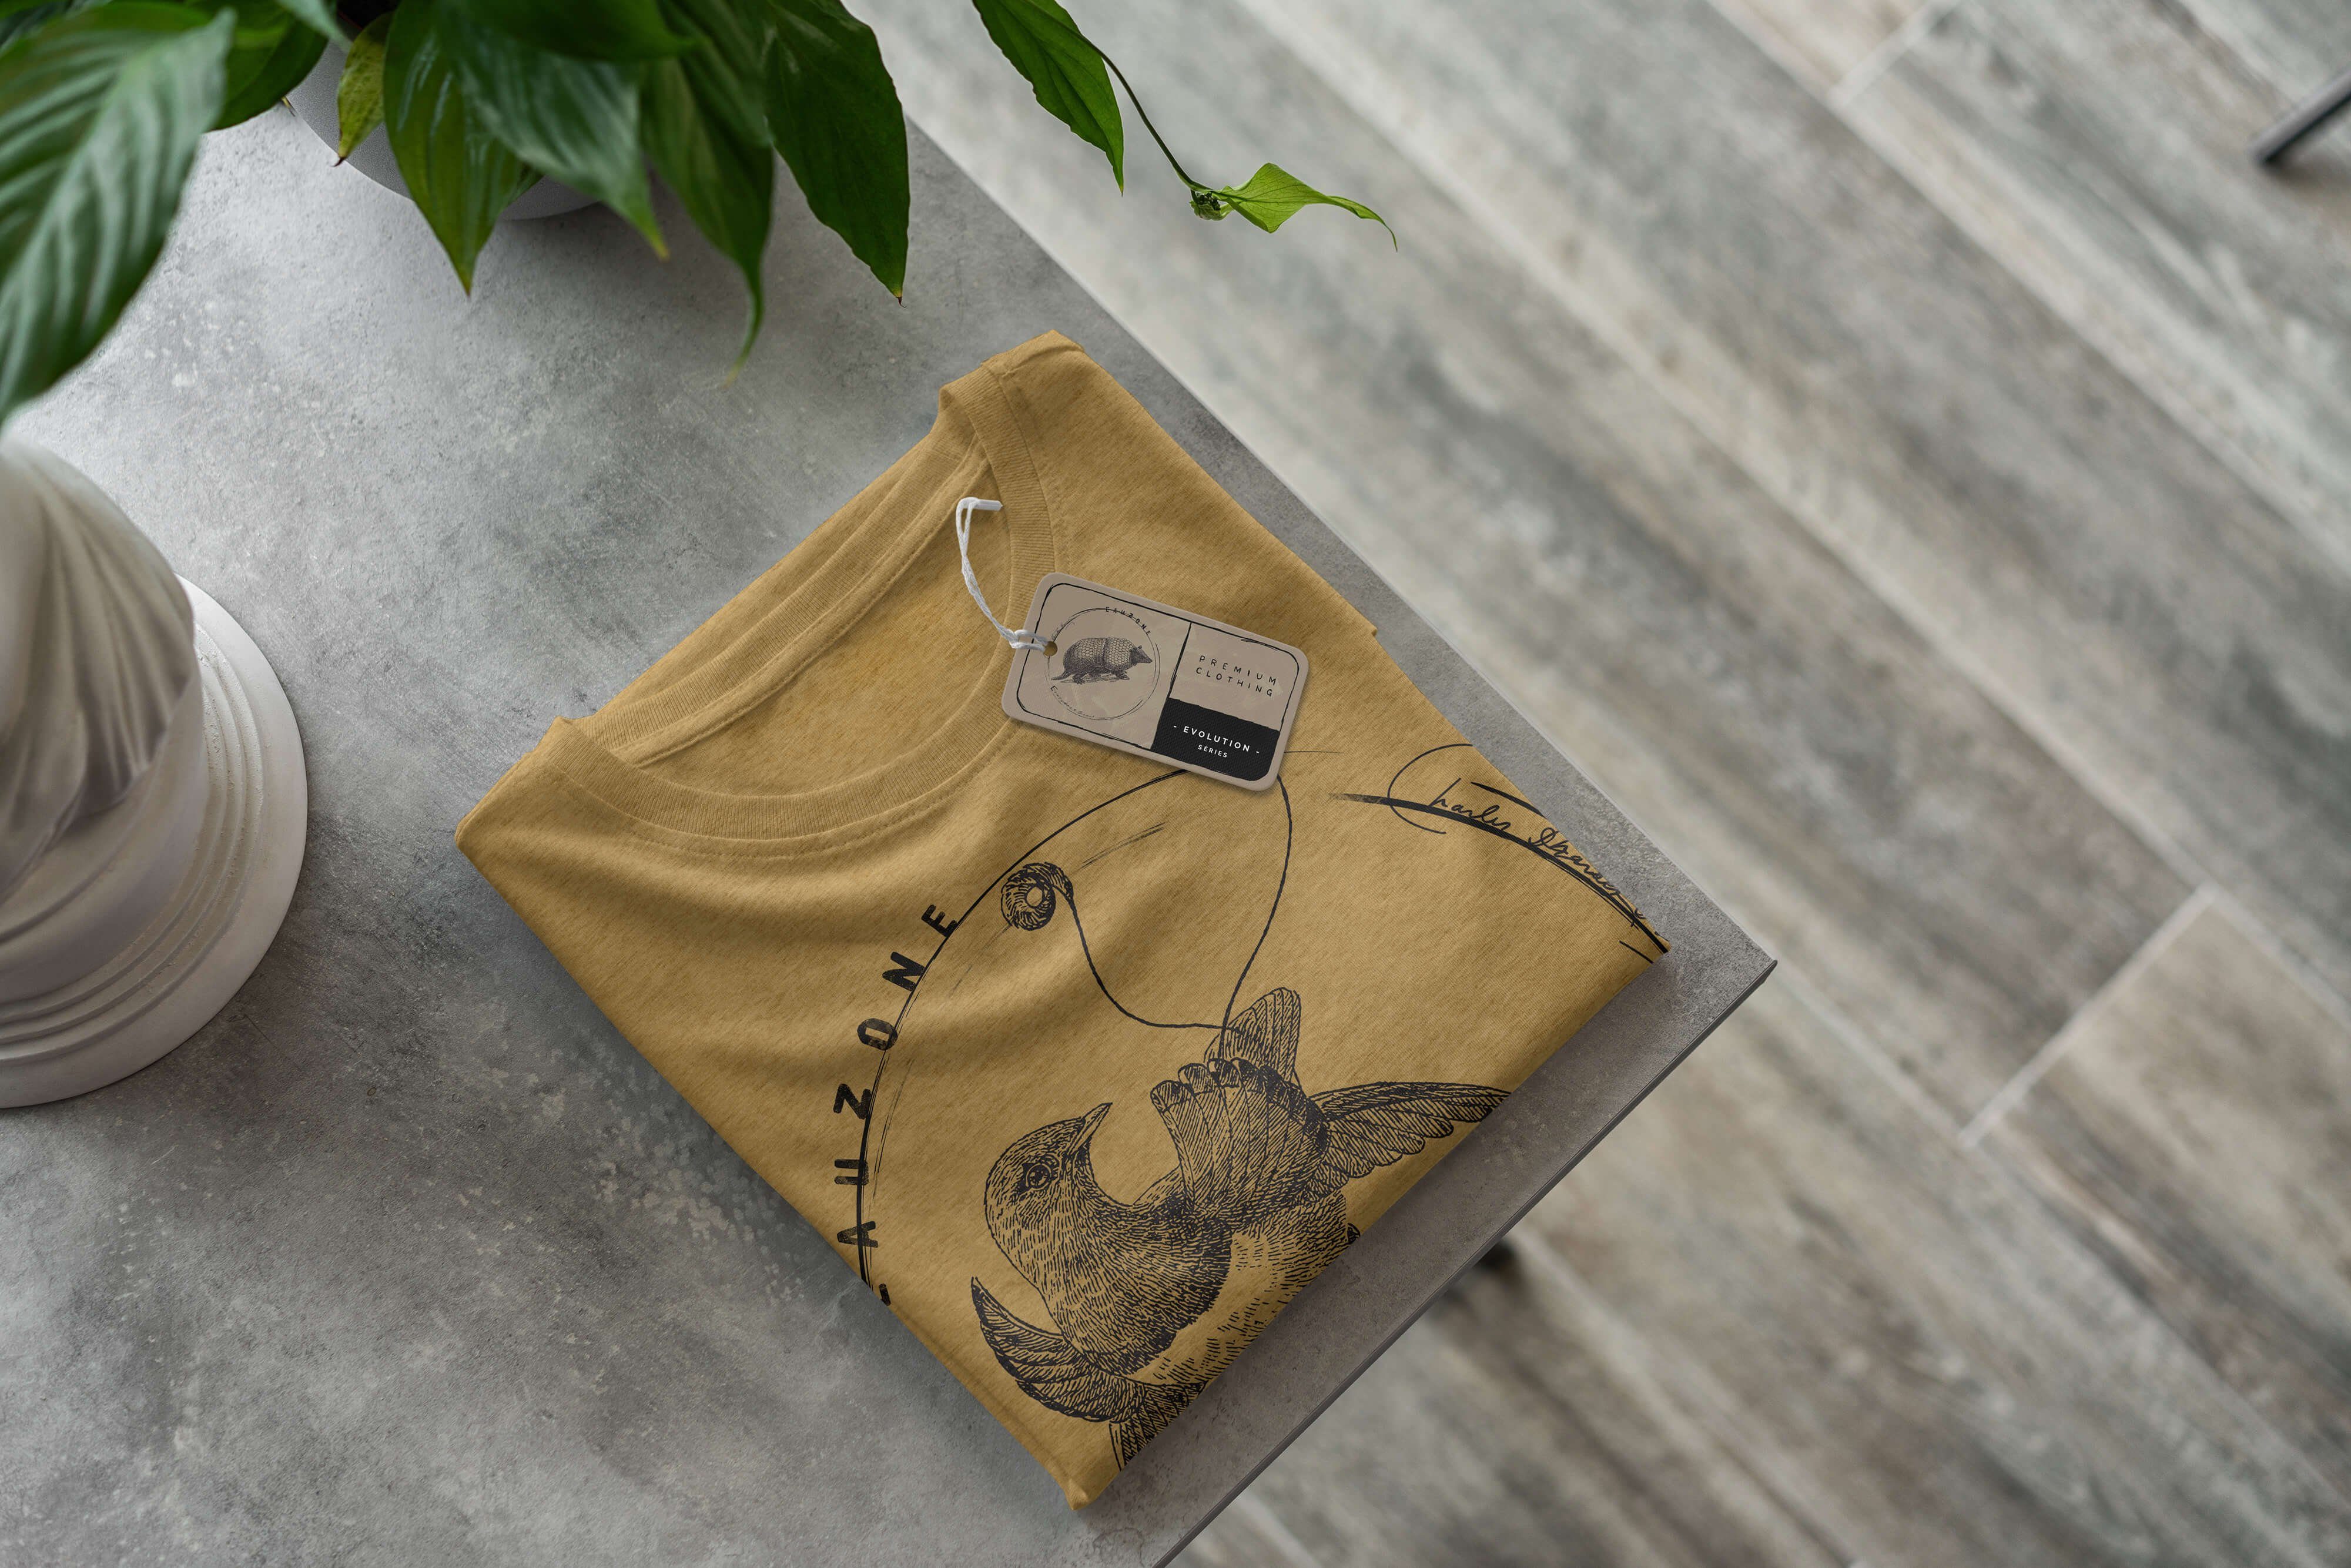 Sinus Art Gold Antique Paradiesvogel T-Shirt Evolution Herren T-Shirt